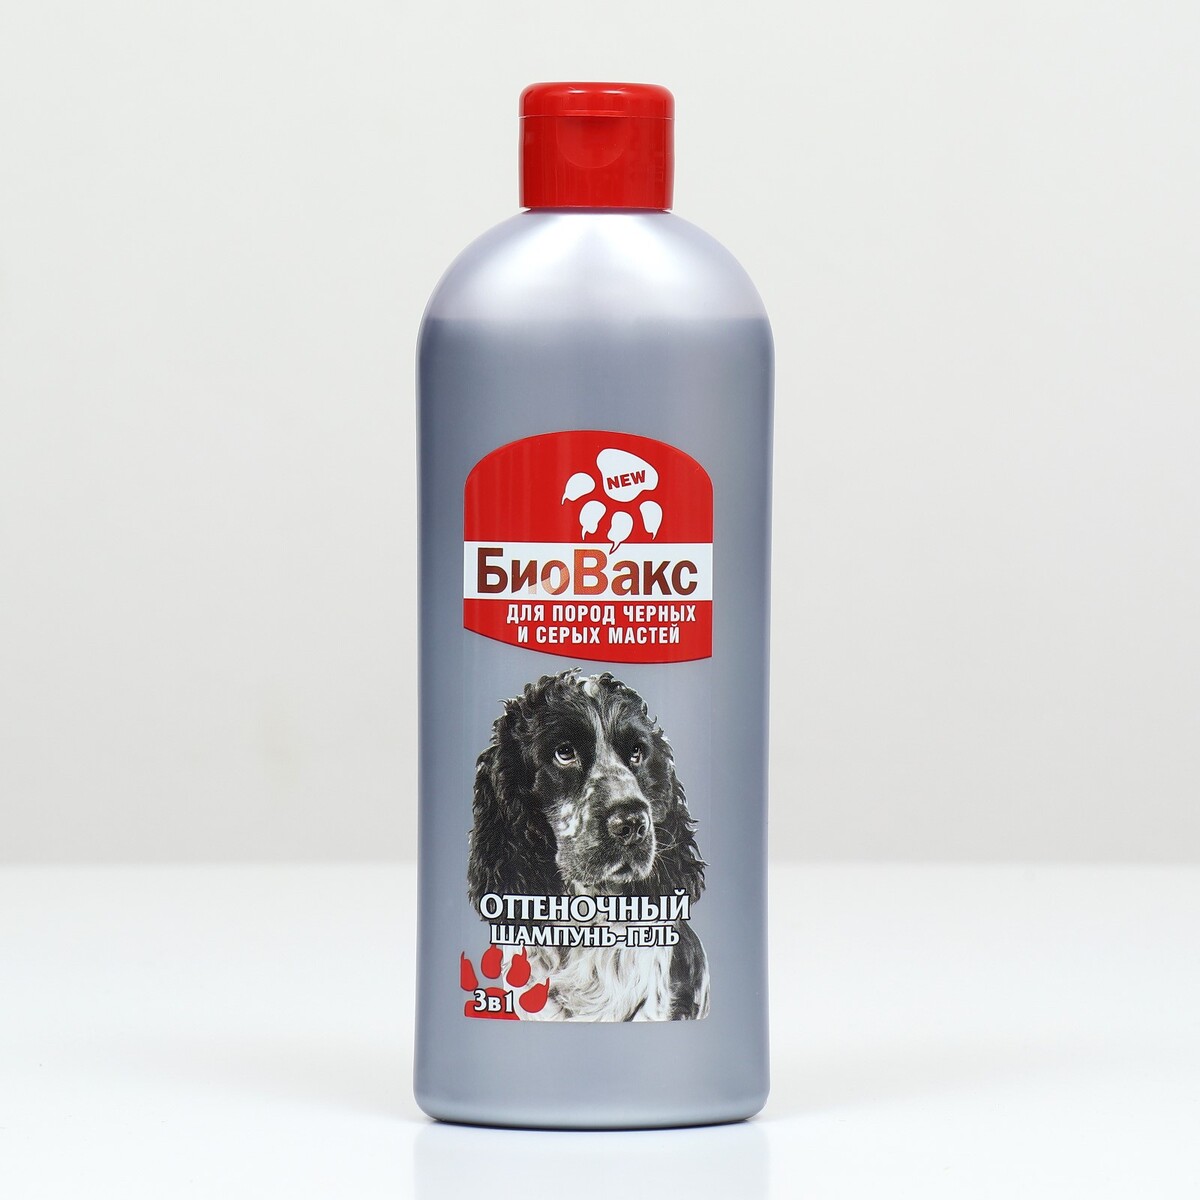 Биовакс шампунь оттеночный для собак черных пород 350 мл шампунь с натуральными ингредиентами 150мл